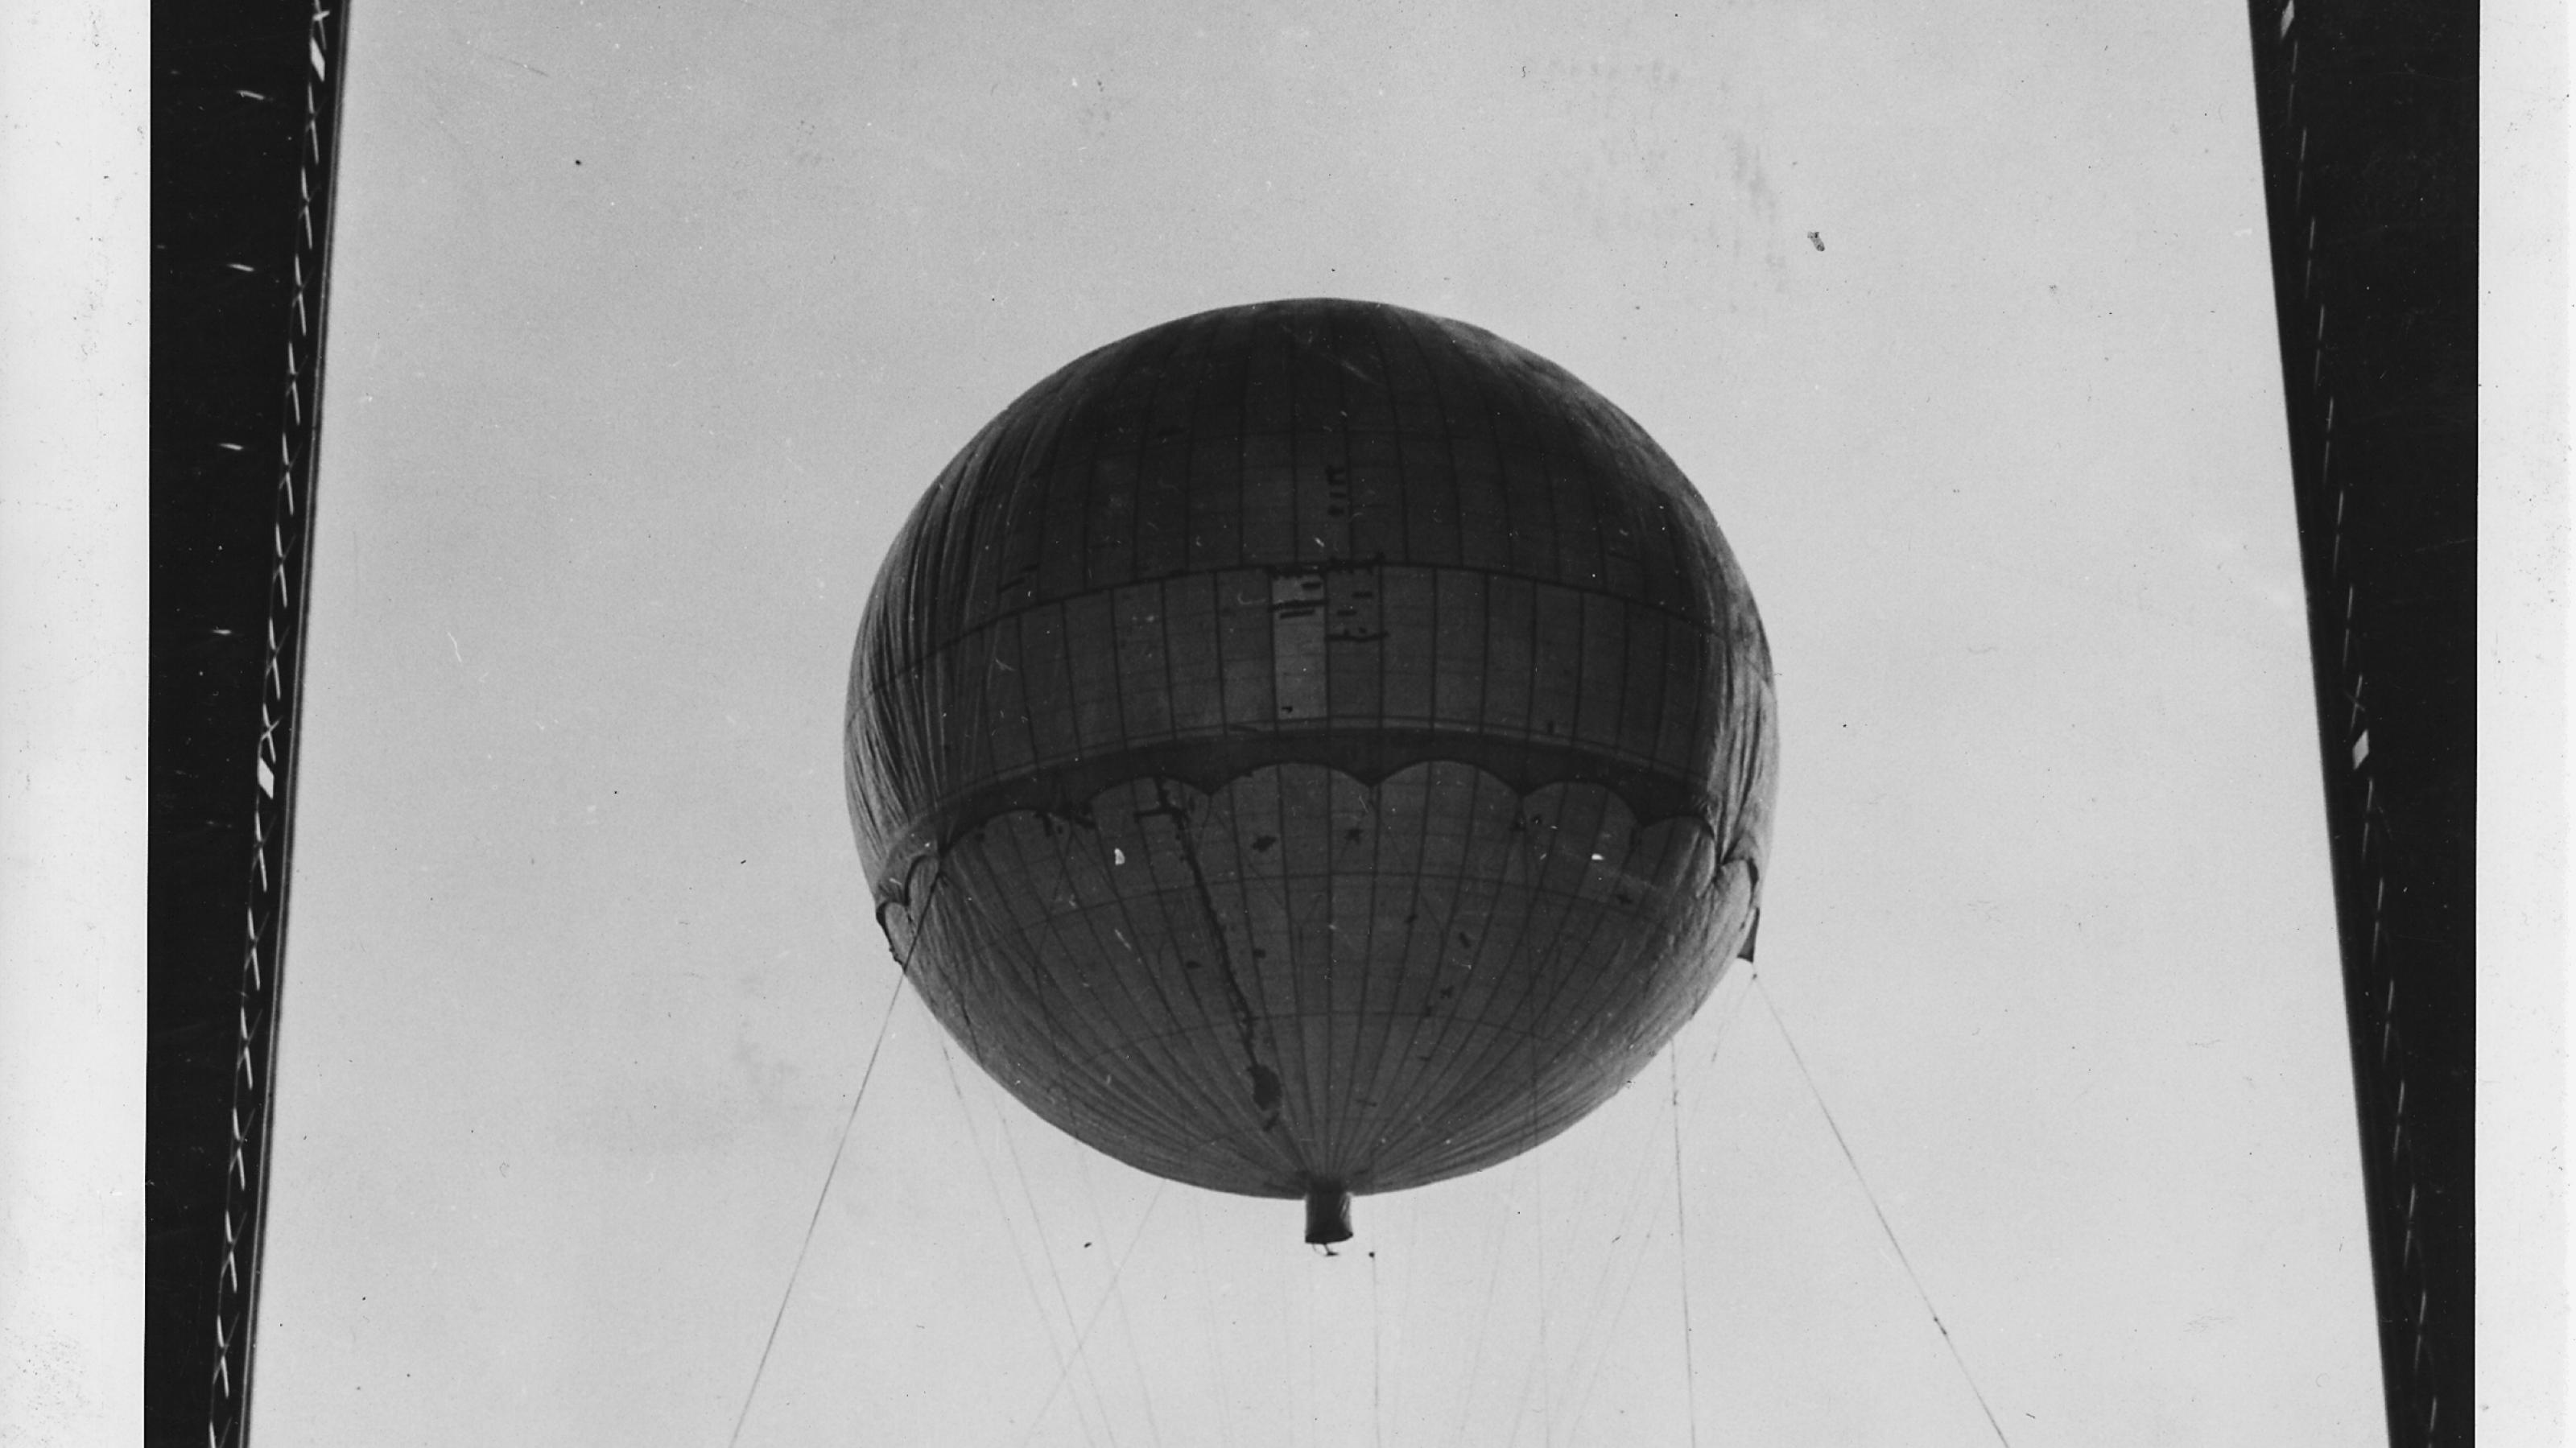 Schwarz-Weiß-Foto eines japanischen Ballons aus dem Zweiten Weltkrieg, der zu Testzwecken vom US-Militär erneut aufgeblasen wurde.